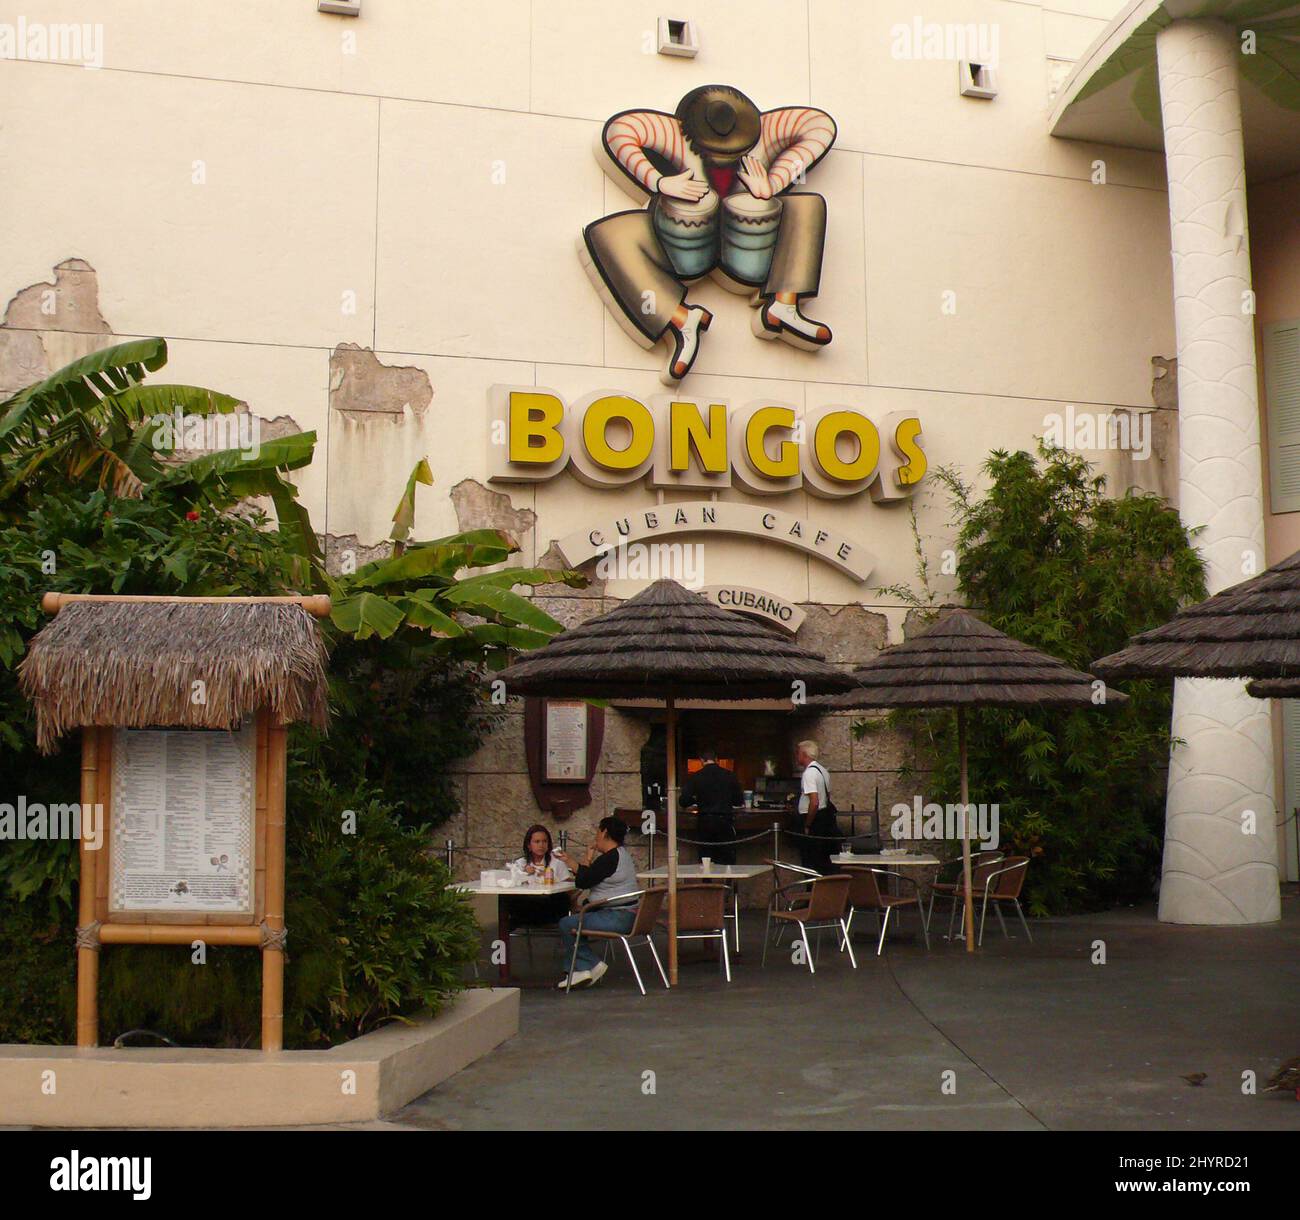 Bongos Cuban Cafe, propiedad de Gloria y Emilio Estefan, en Walt Disney World en Orlando, Florida. Foto de stock